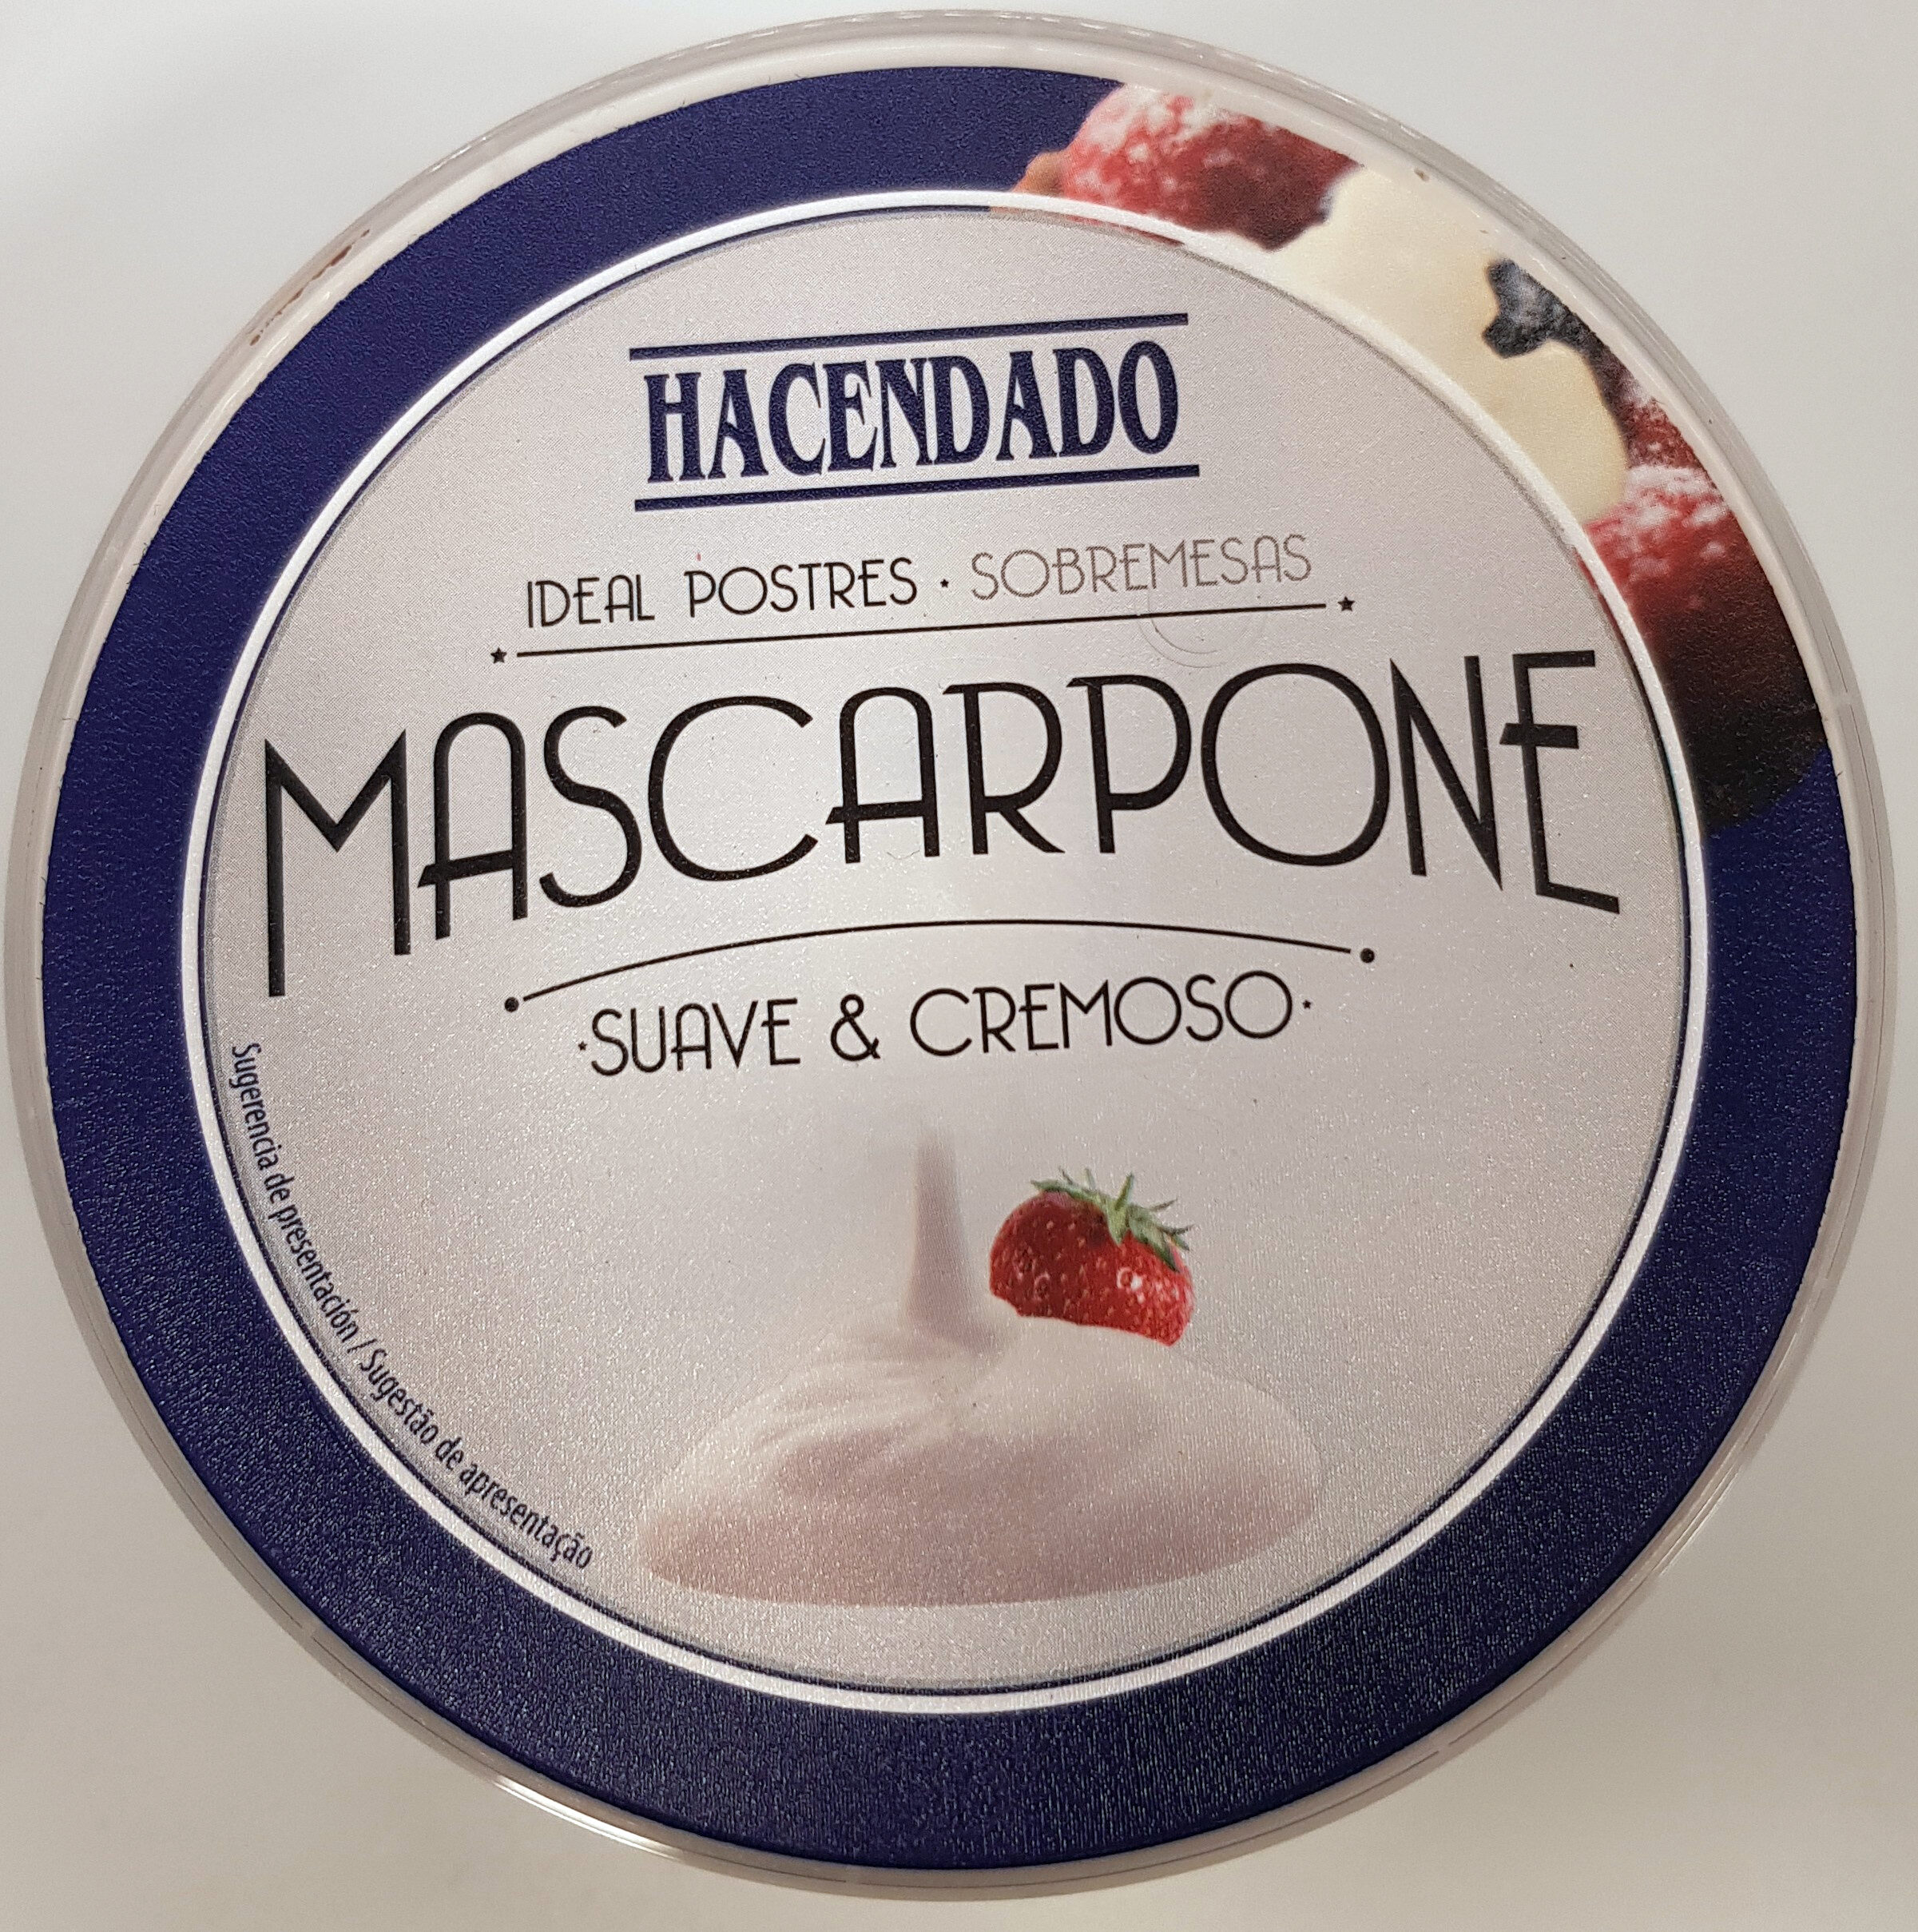 Mascarpone - Product - es